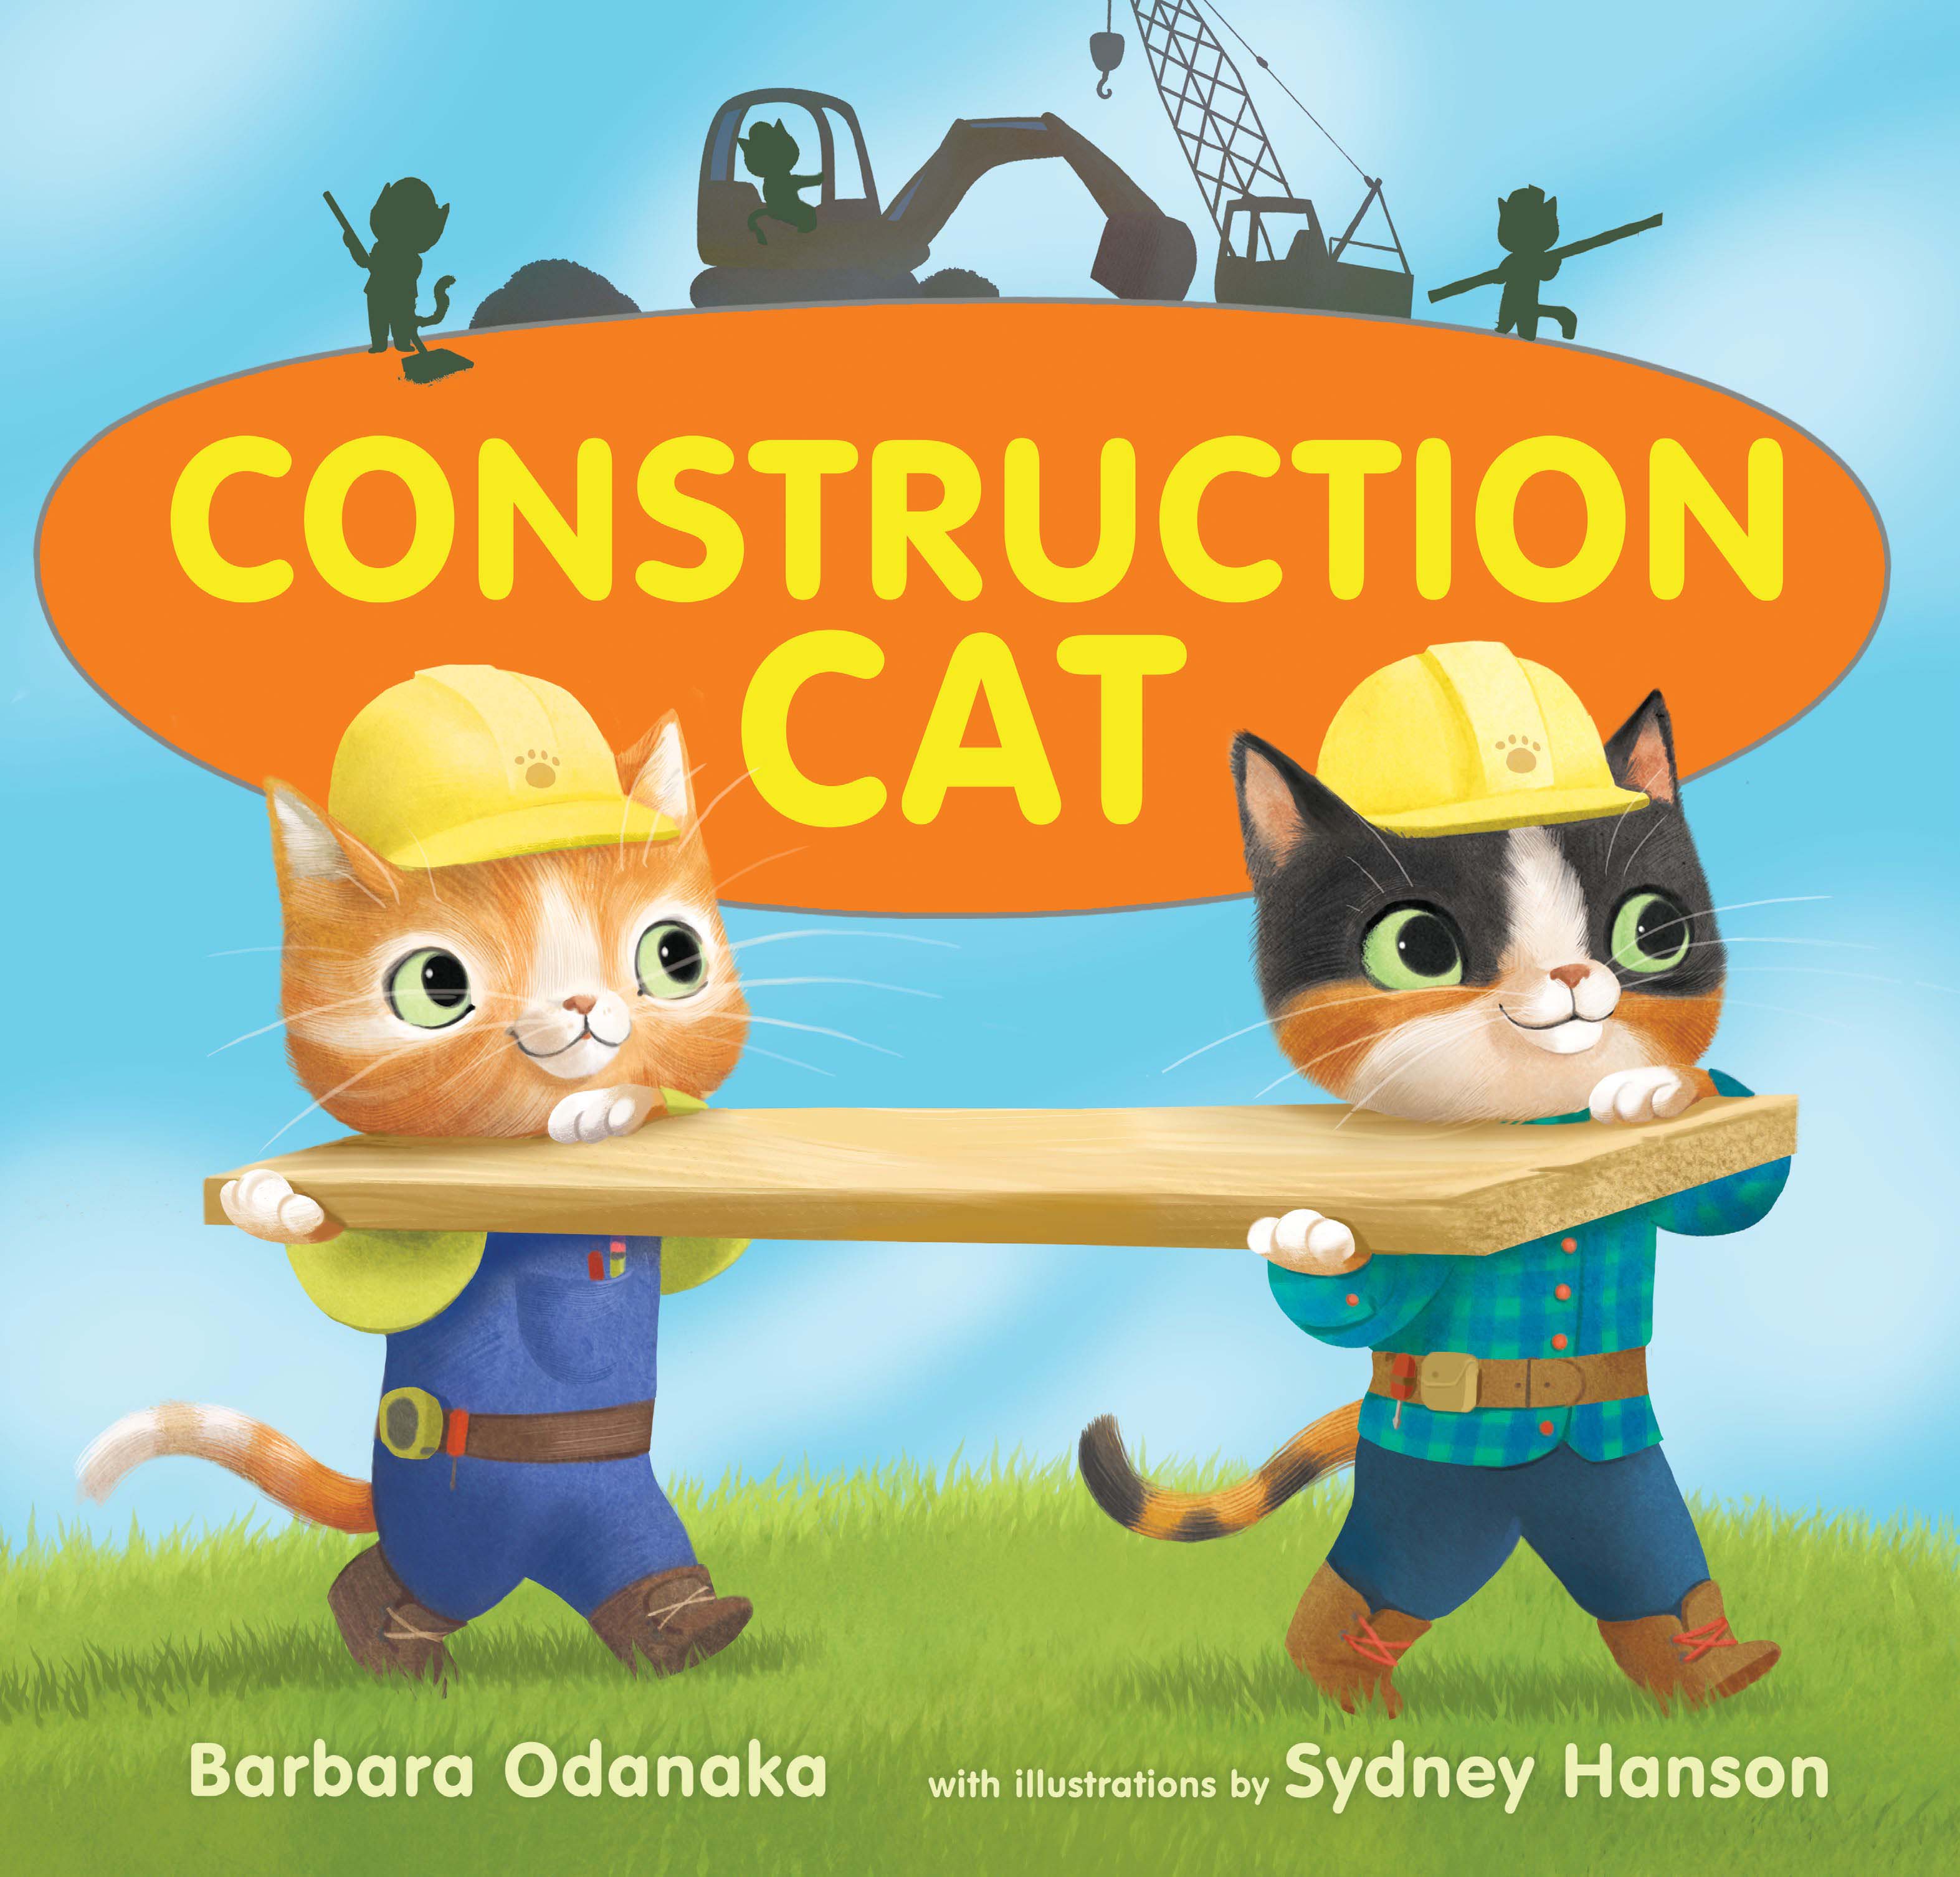 The cover of Barbara Odanaka's book "Construction Cat"